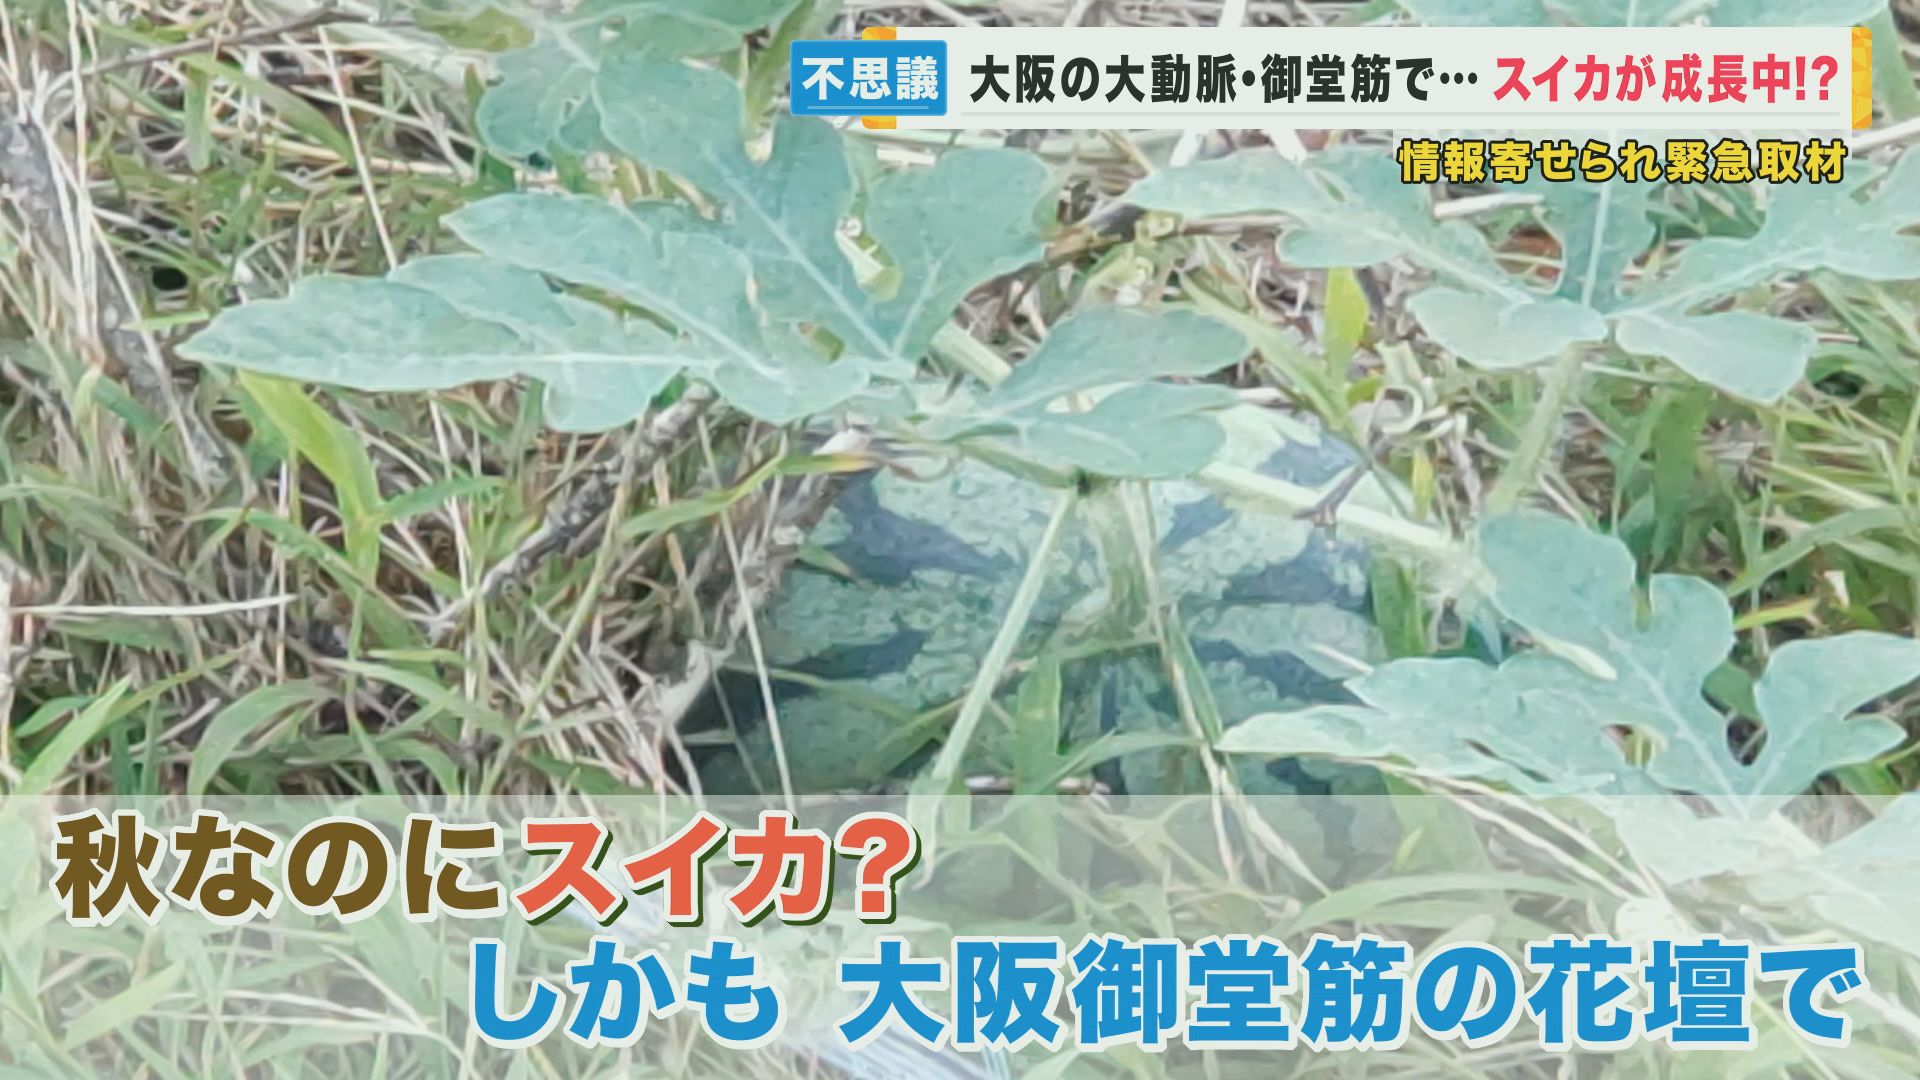 大阪・御堂筋の中央分離帯で育つ“ど根性スイカ”　専門家「これはすごい」とスイカを絶賛